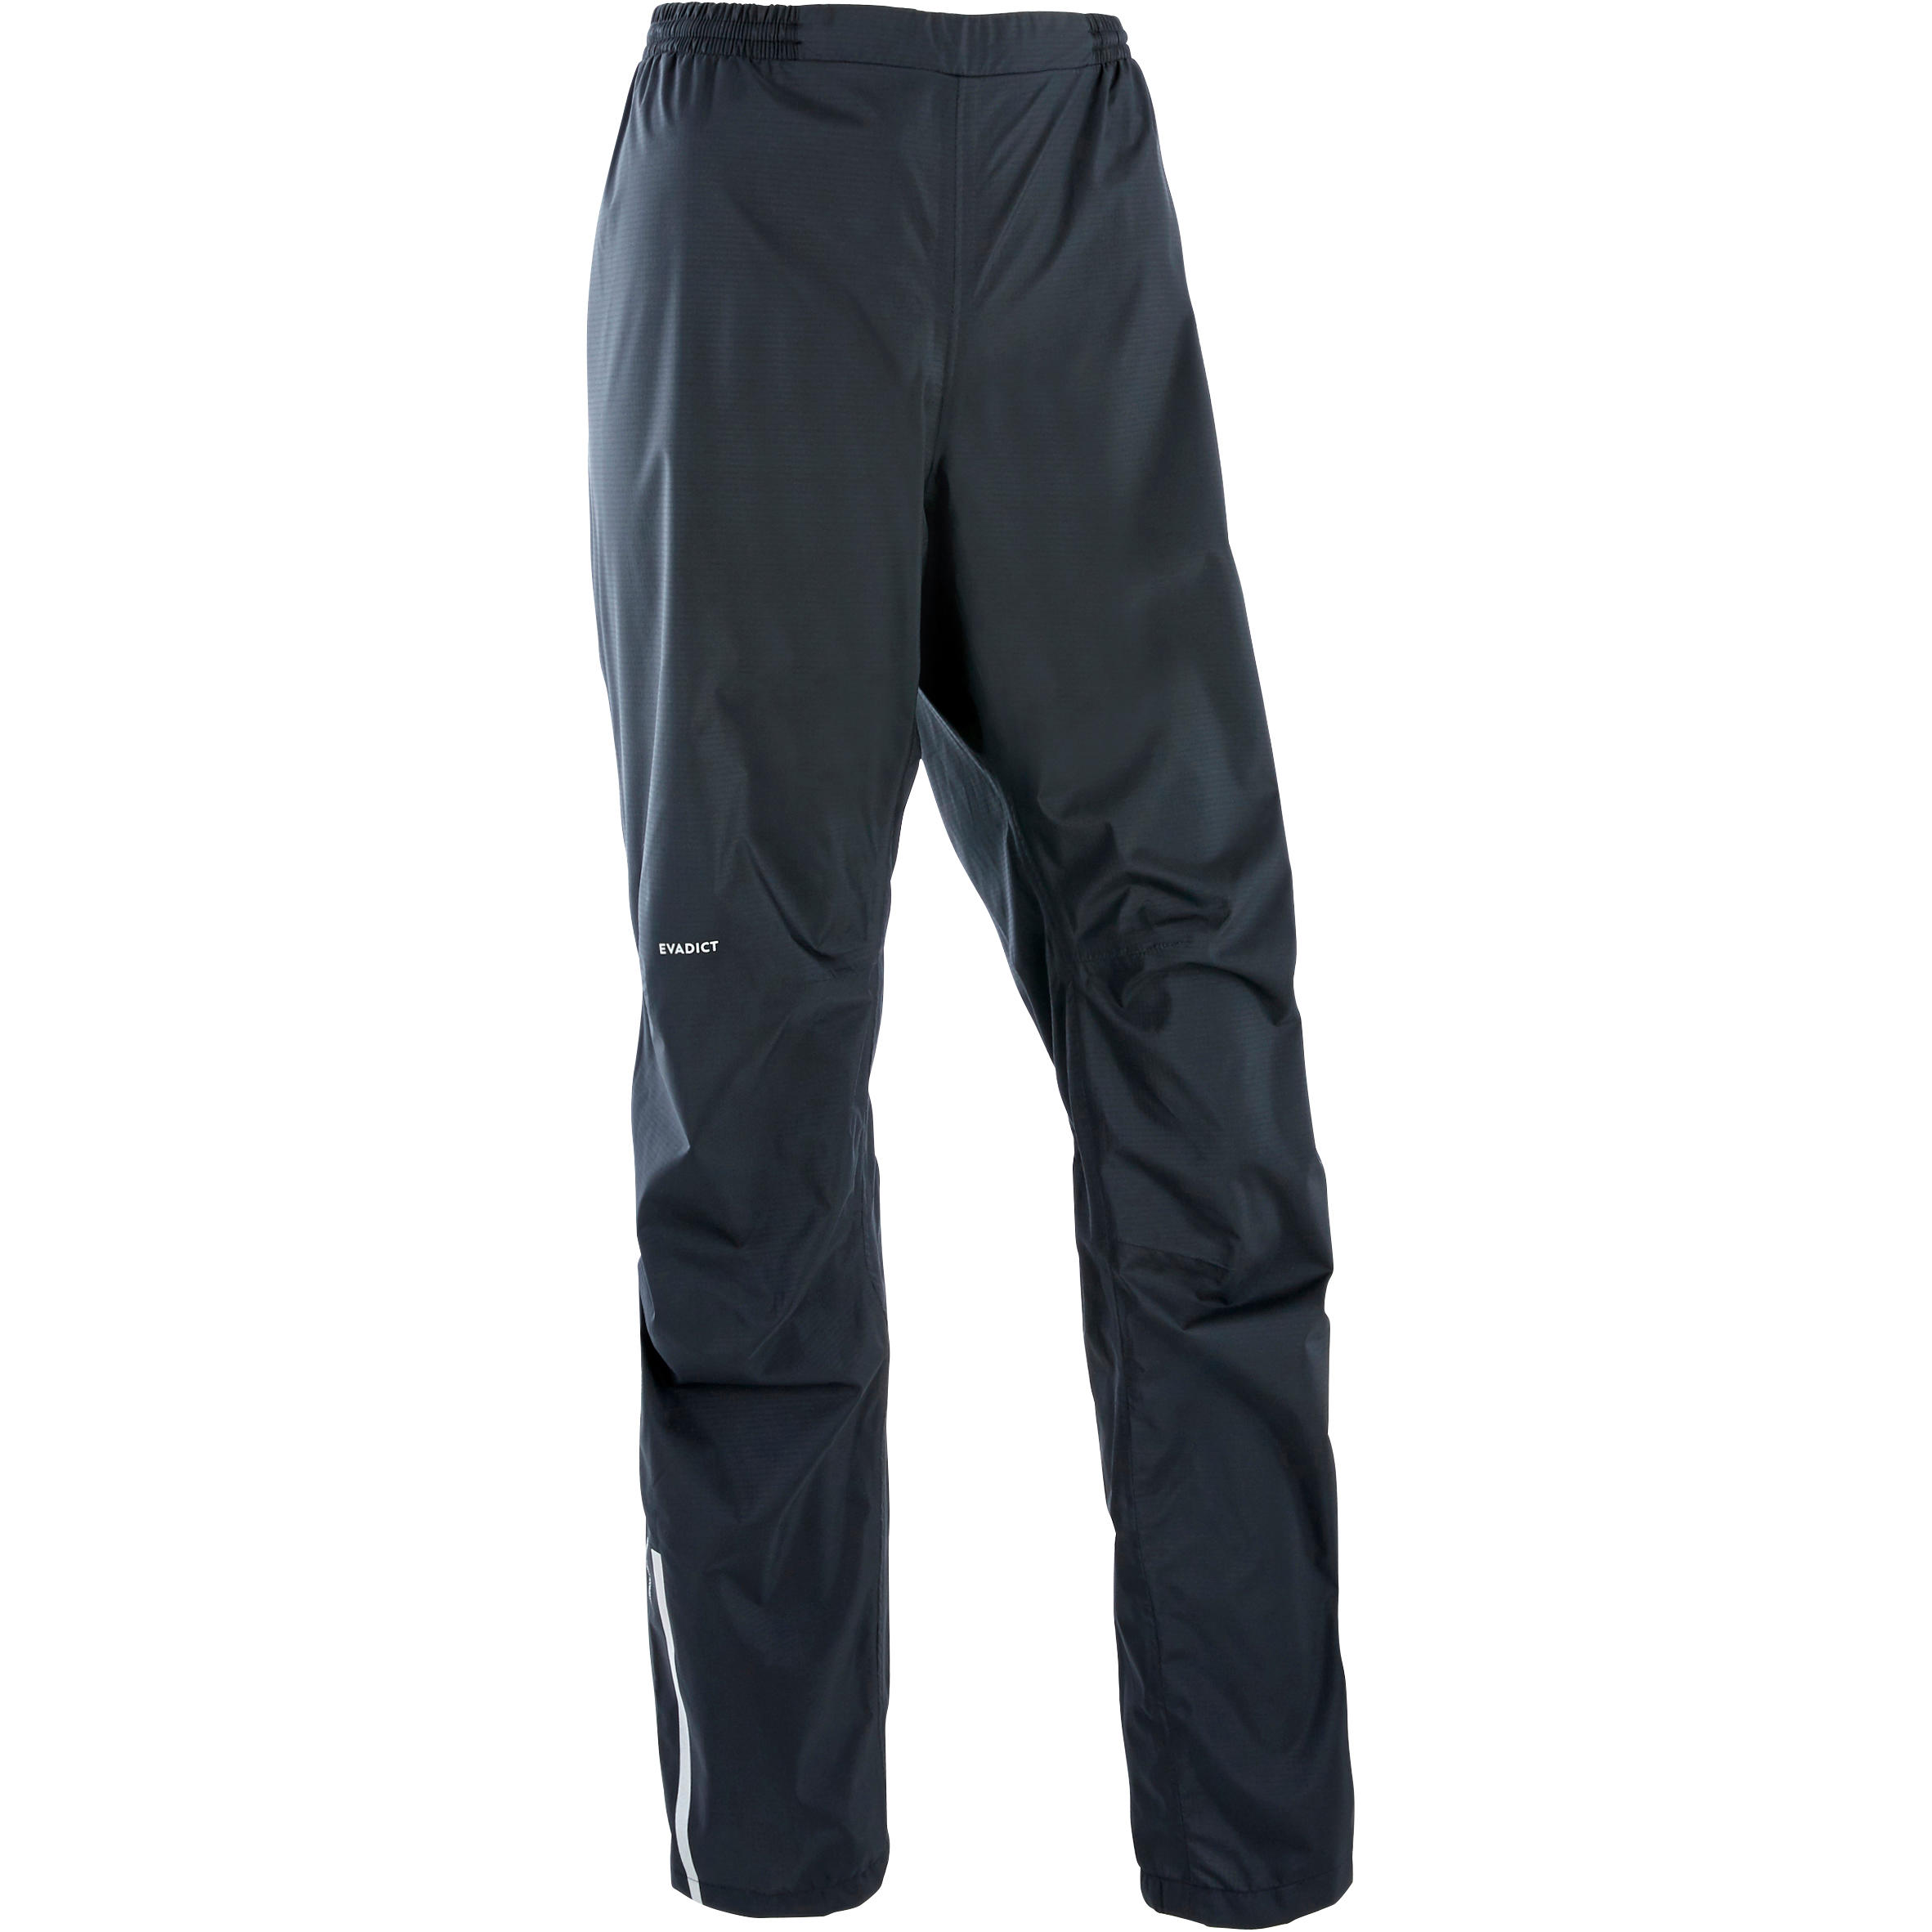 Running Trail Waterproof Pants - Black 